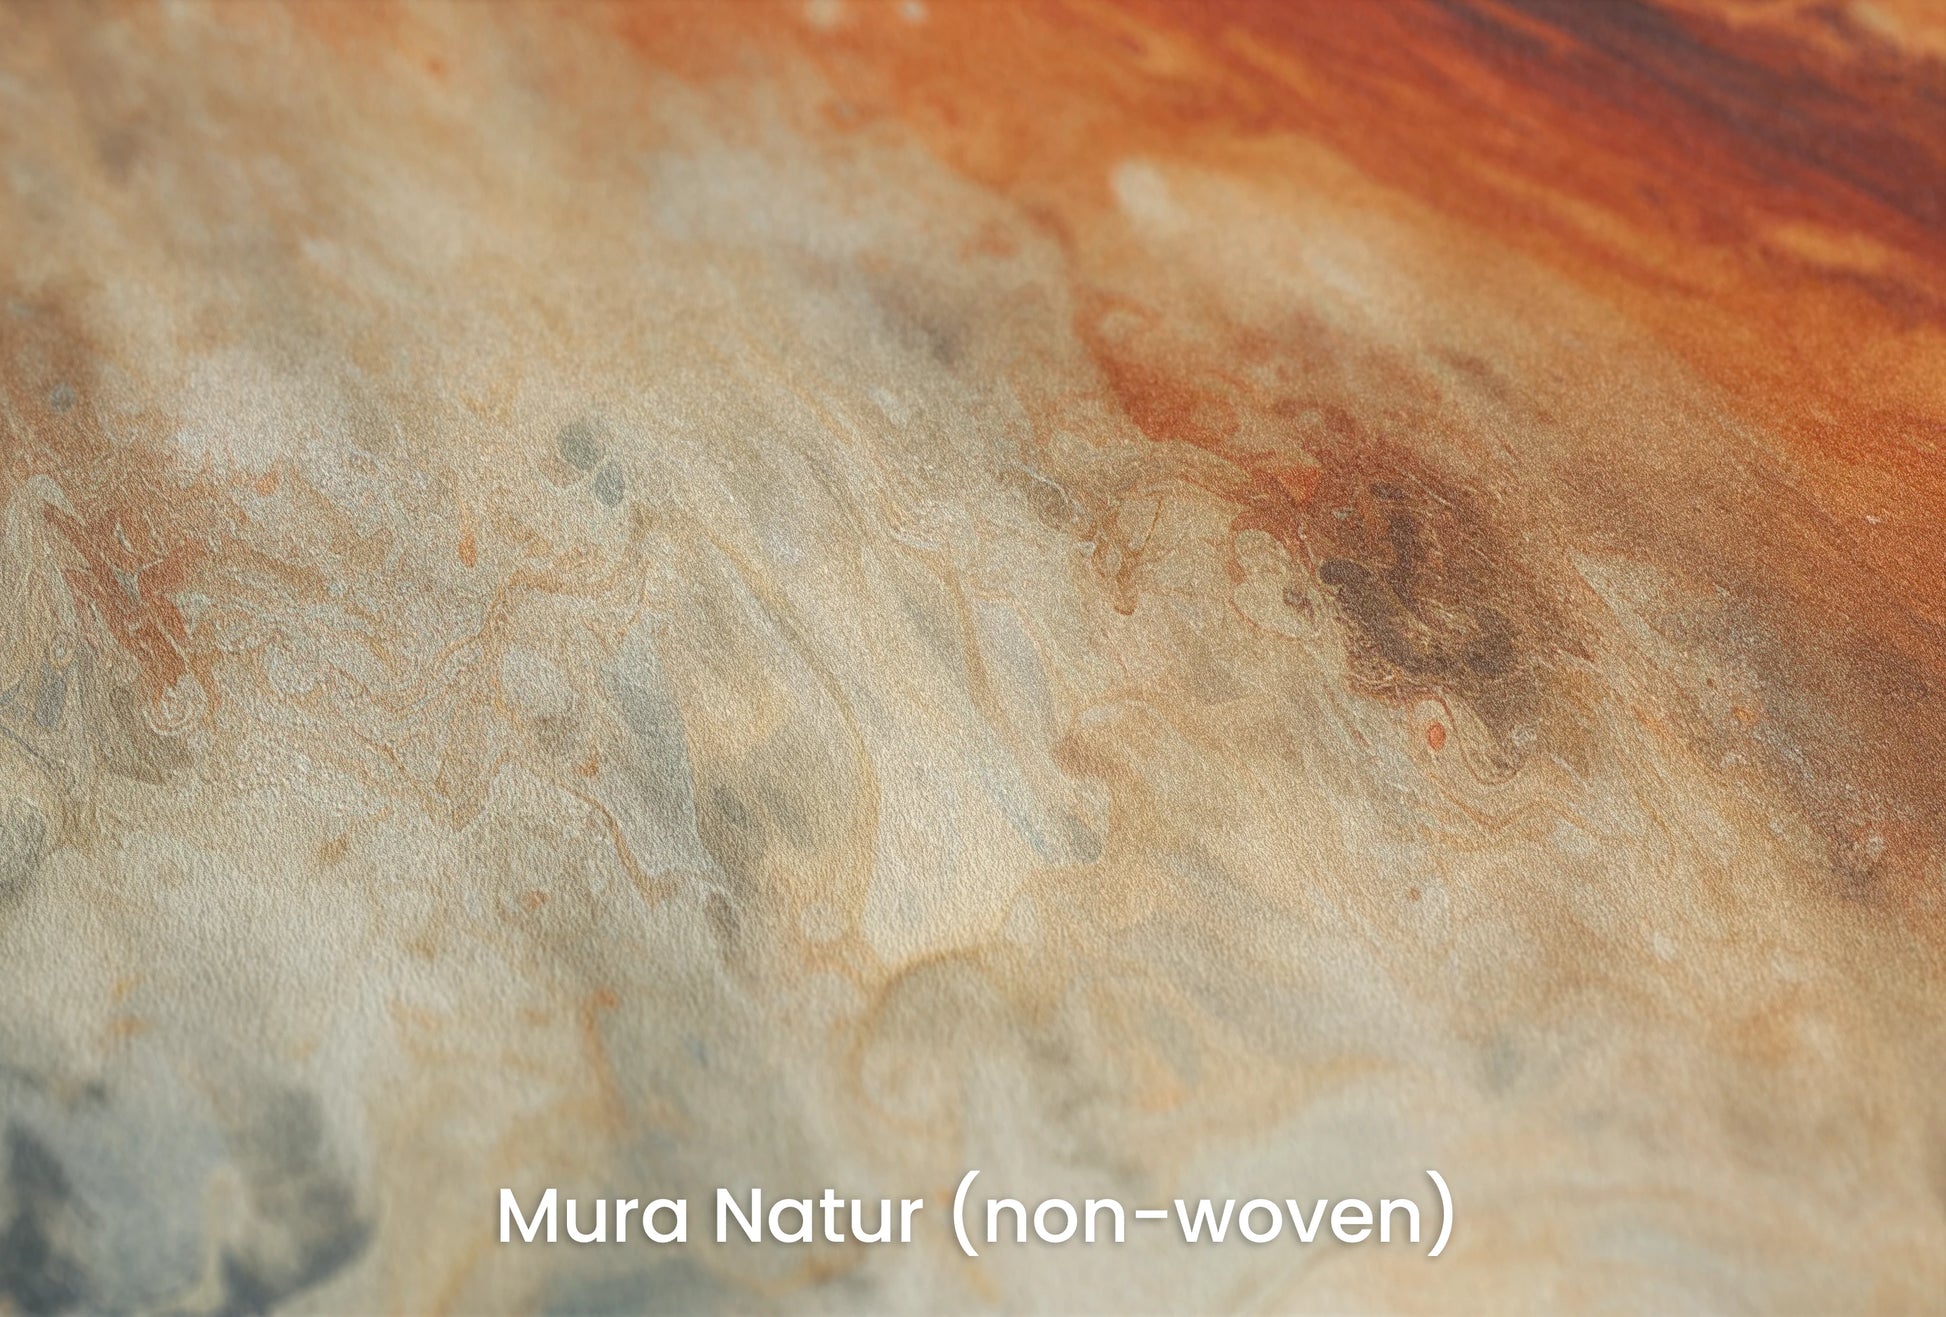 Zbliżenie na artystyczną fototapetę o nazwie Jupiter's Storm na podłożu Mura Natur (non-woven) - naturalne i ekologiczne podłoże.